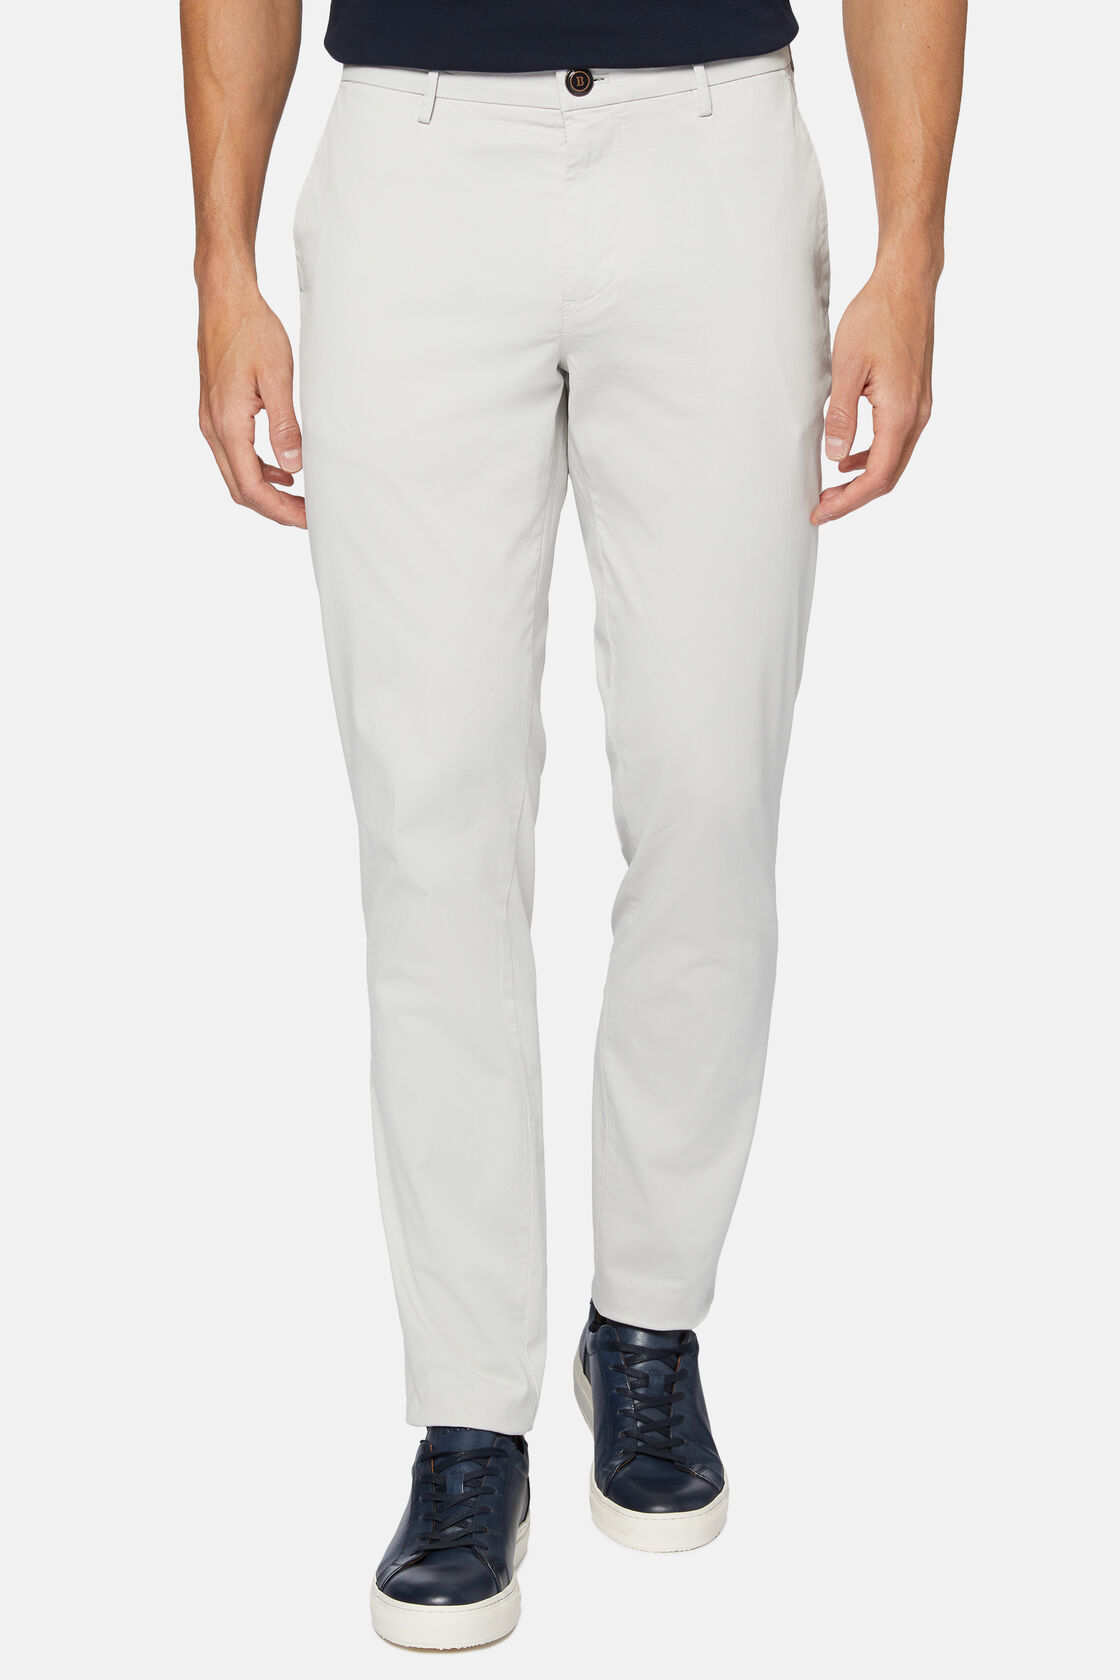 Pantalon En Coton Extensible, gris clair, hi-res